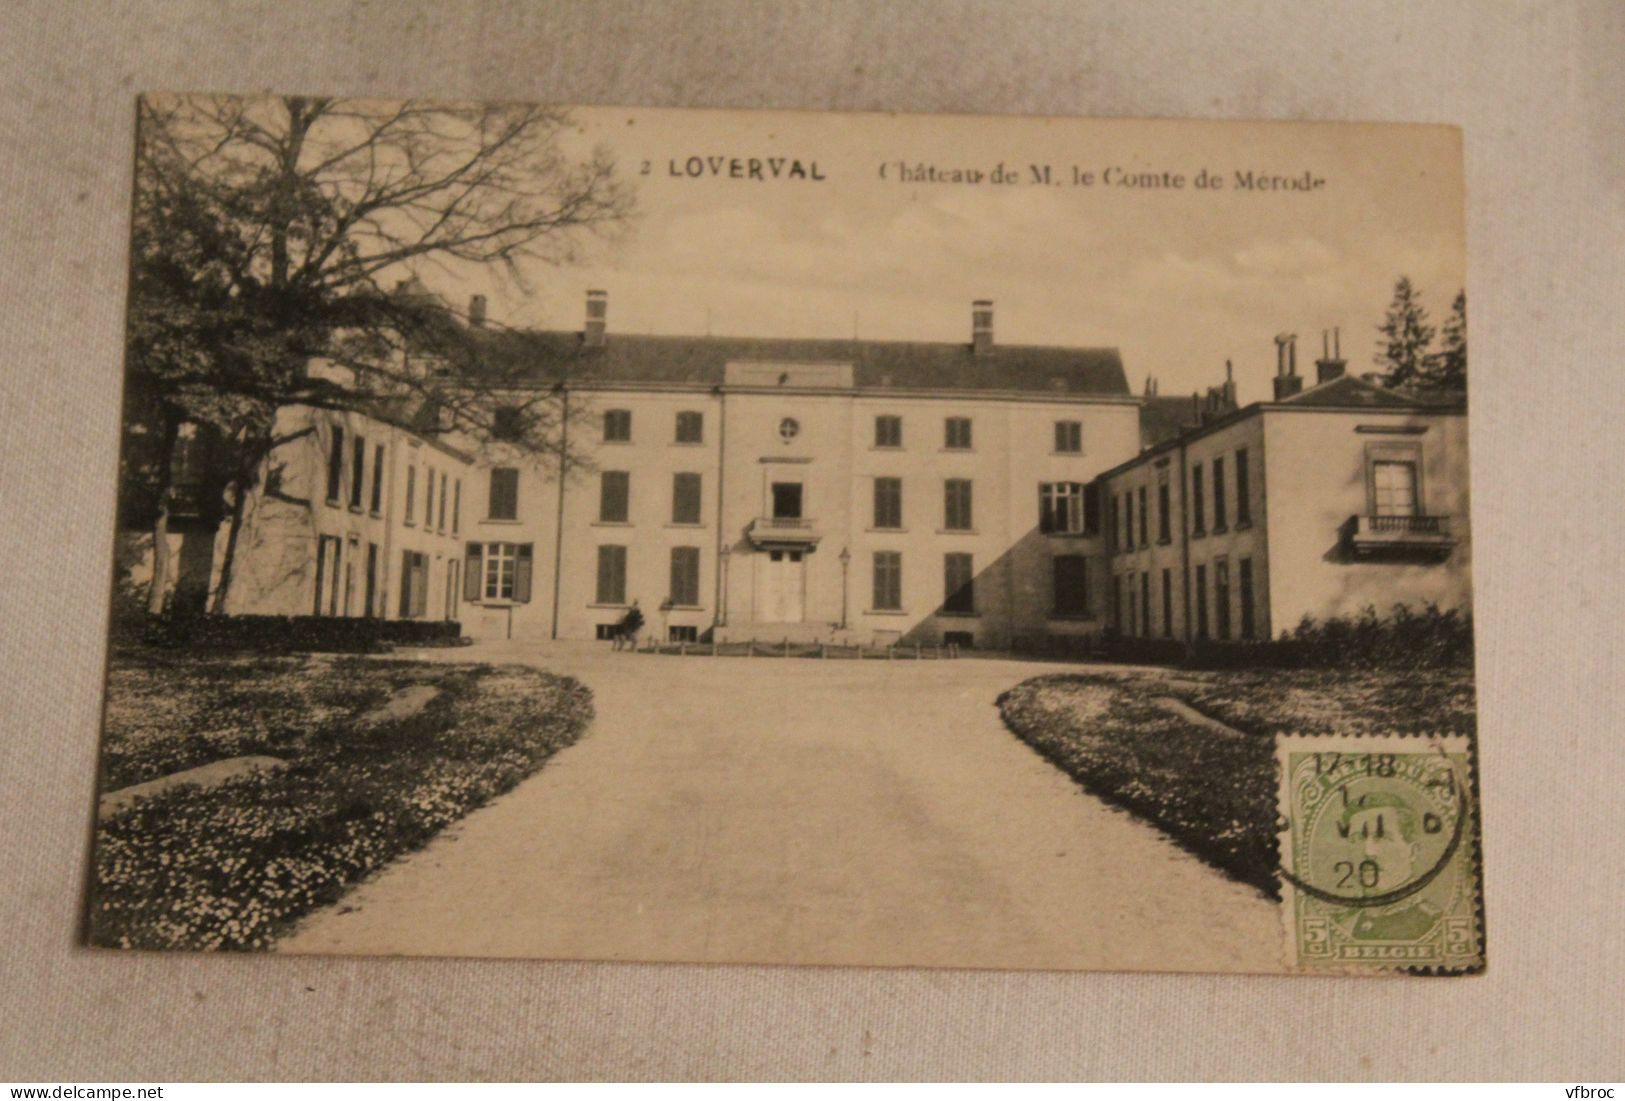 Cpa 1920, Loverval, Château De M. Le Comte De Mérode, Belgique - Gerpinnes